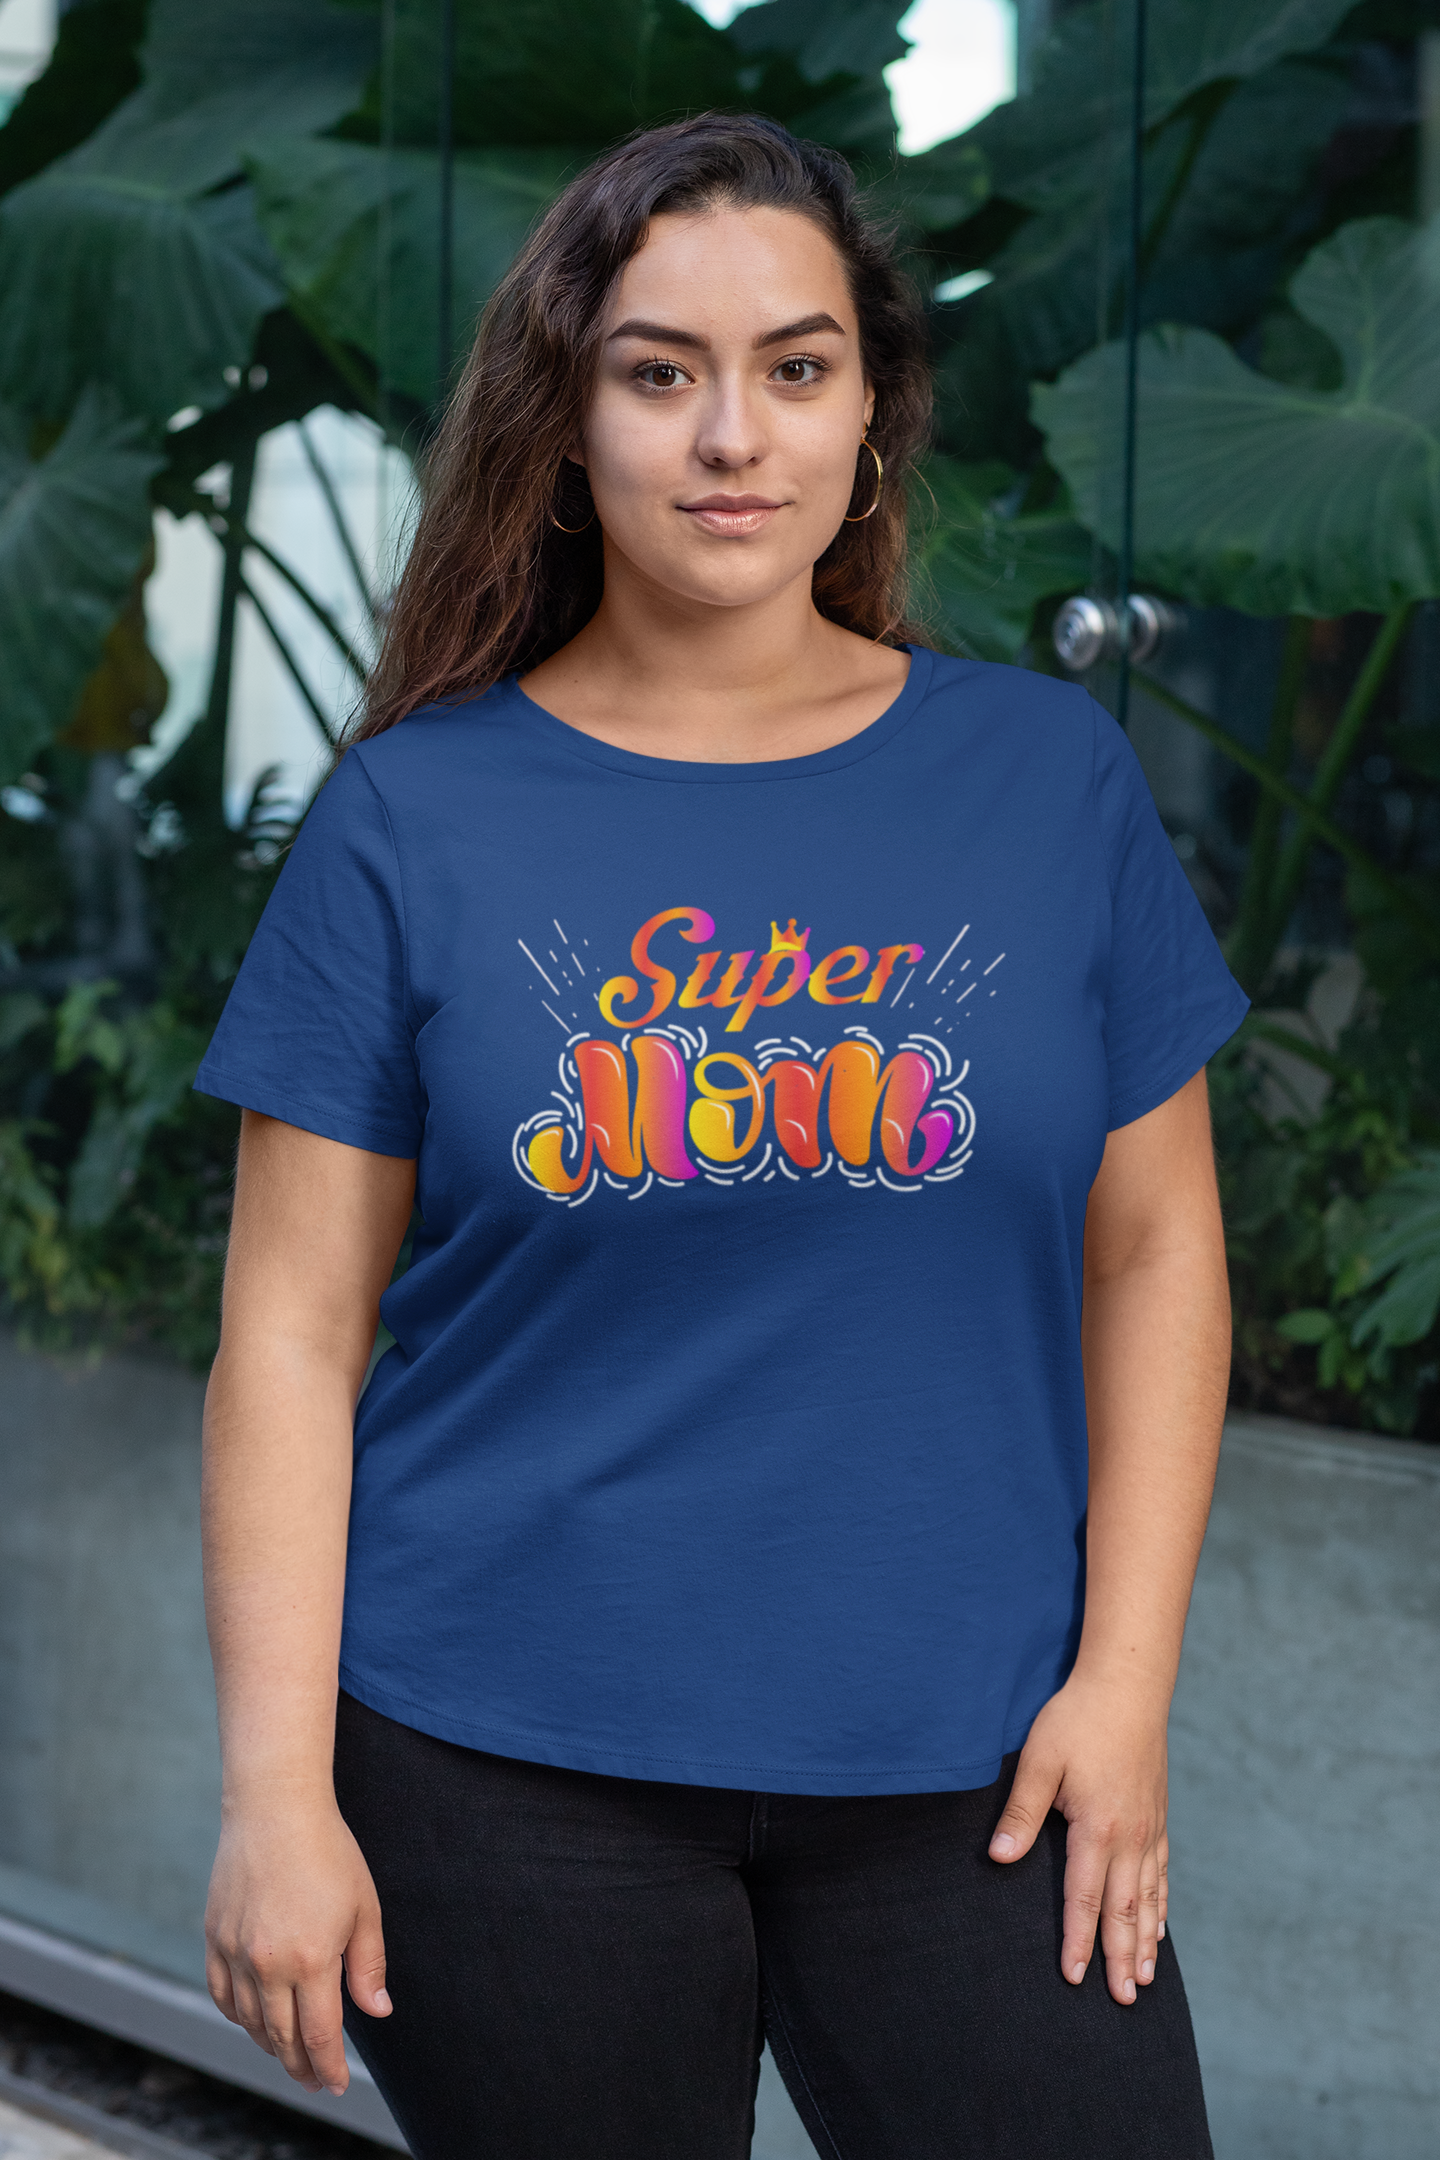 Super Mom - T-Shirt